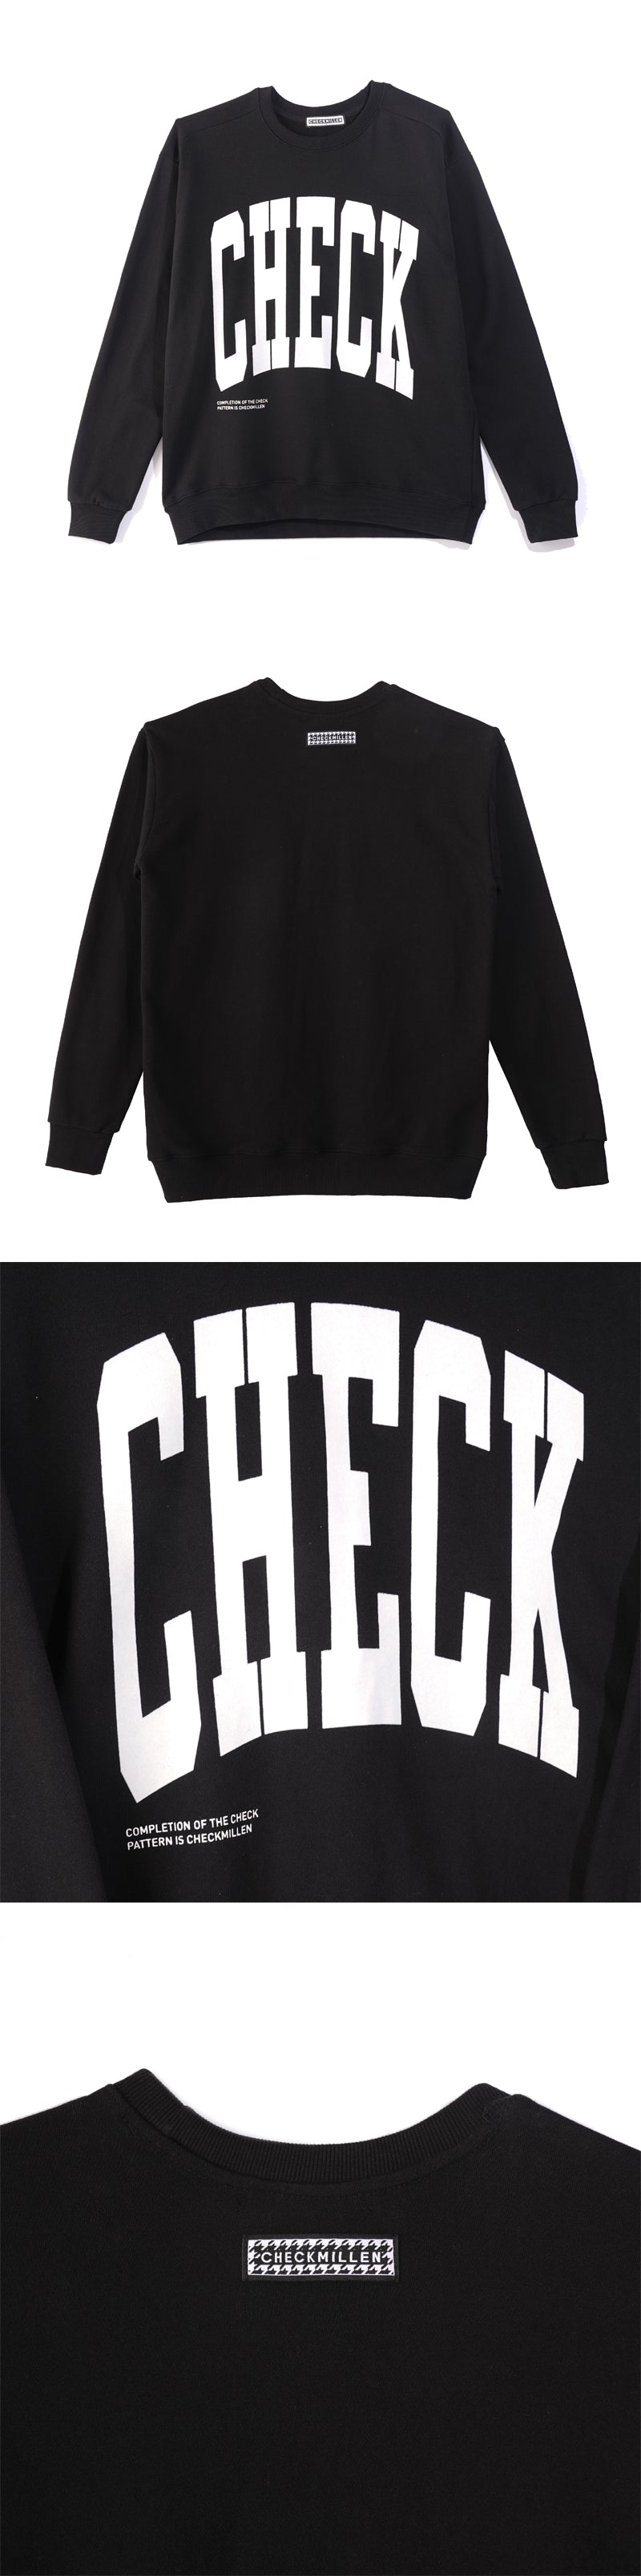 チェックスウェットシャツ / CHECK SWEATSHIRT (BLACK)